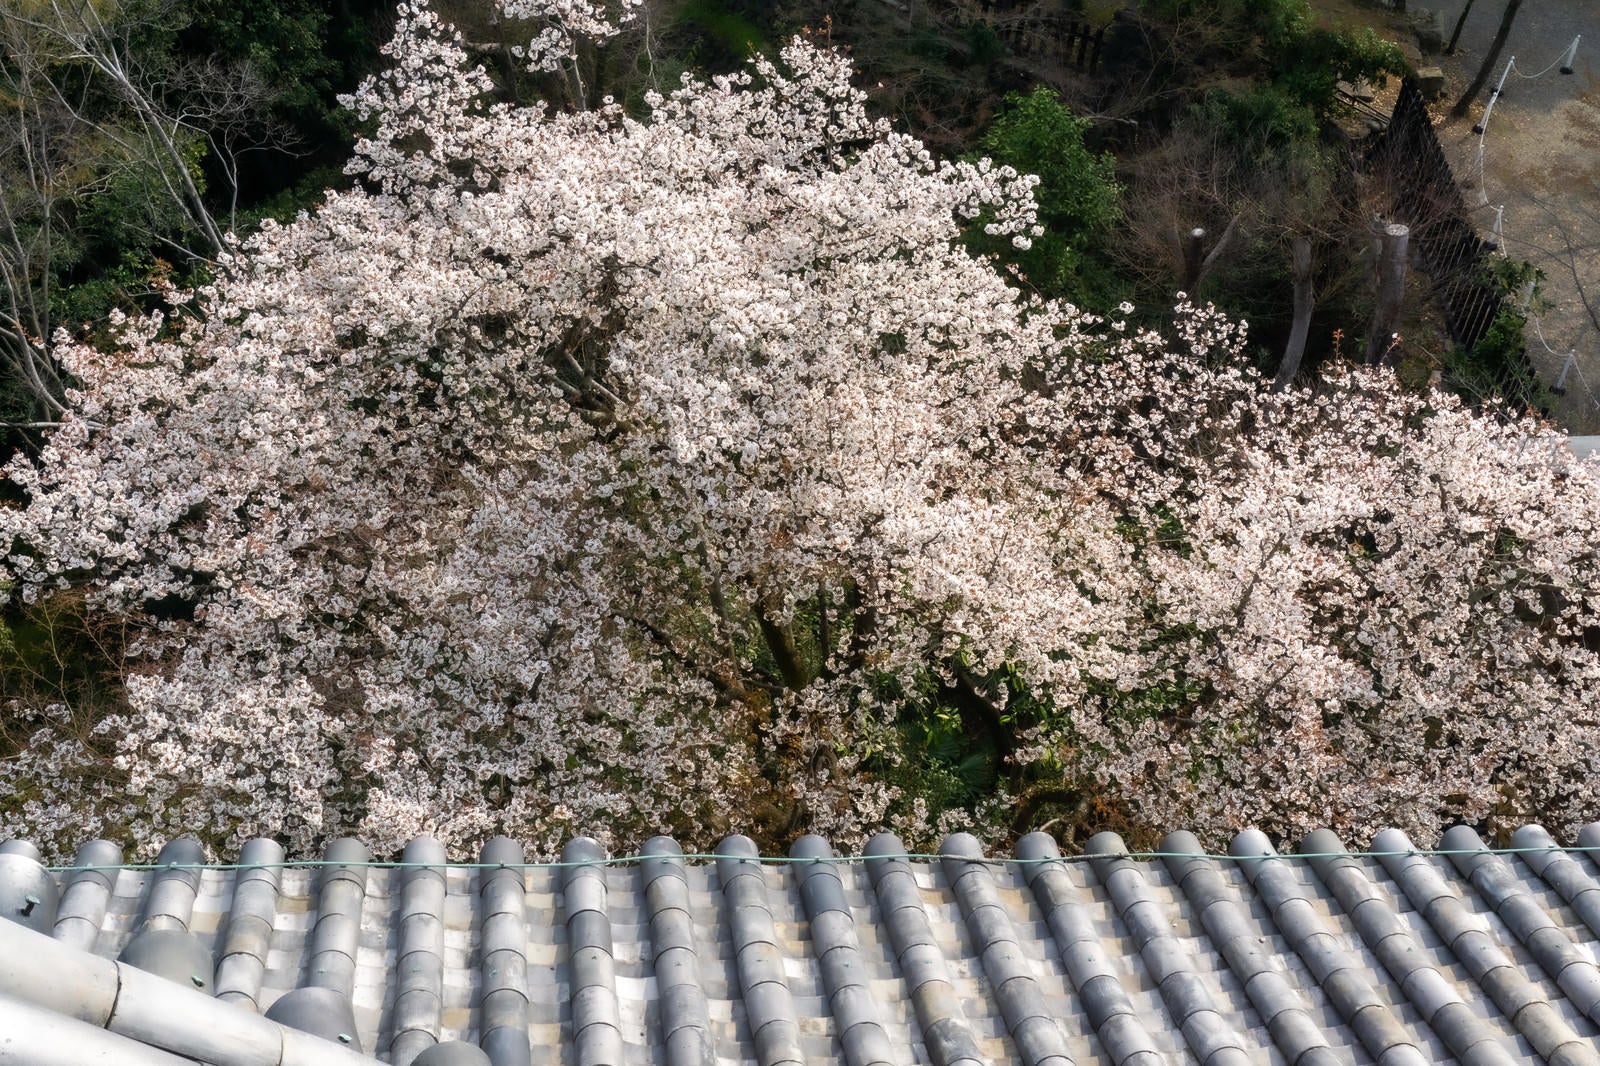 「天守閣の瓦屋根と桜を見下ろす」の写真